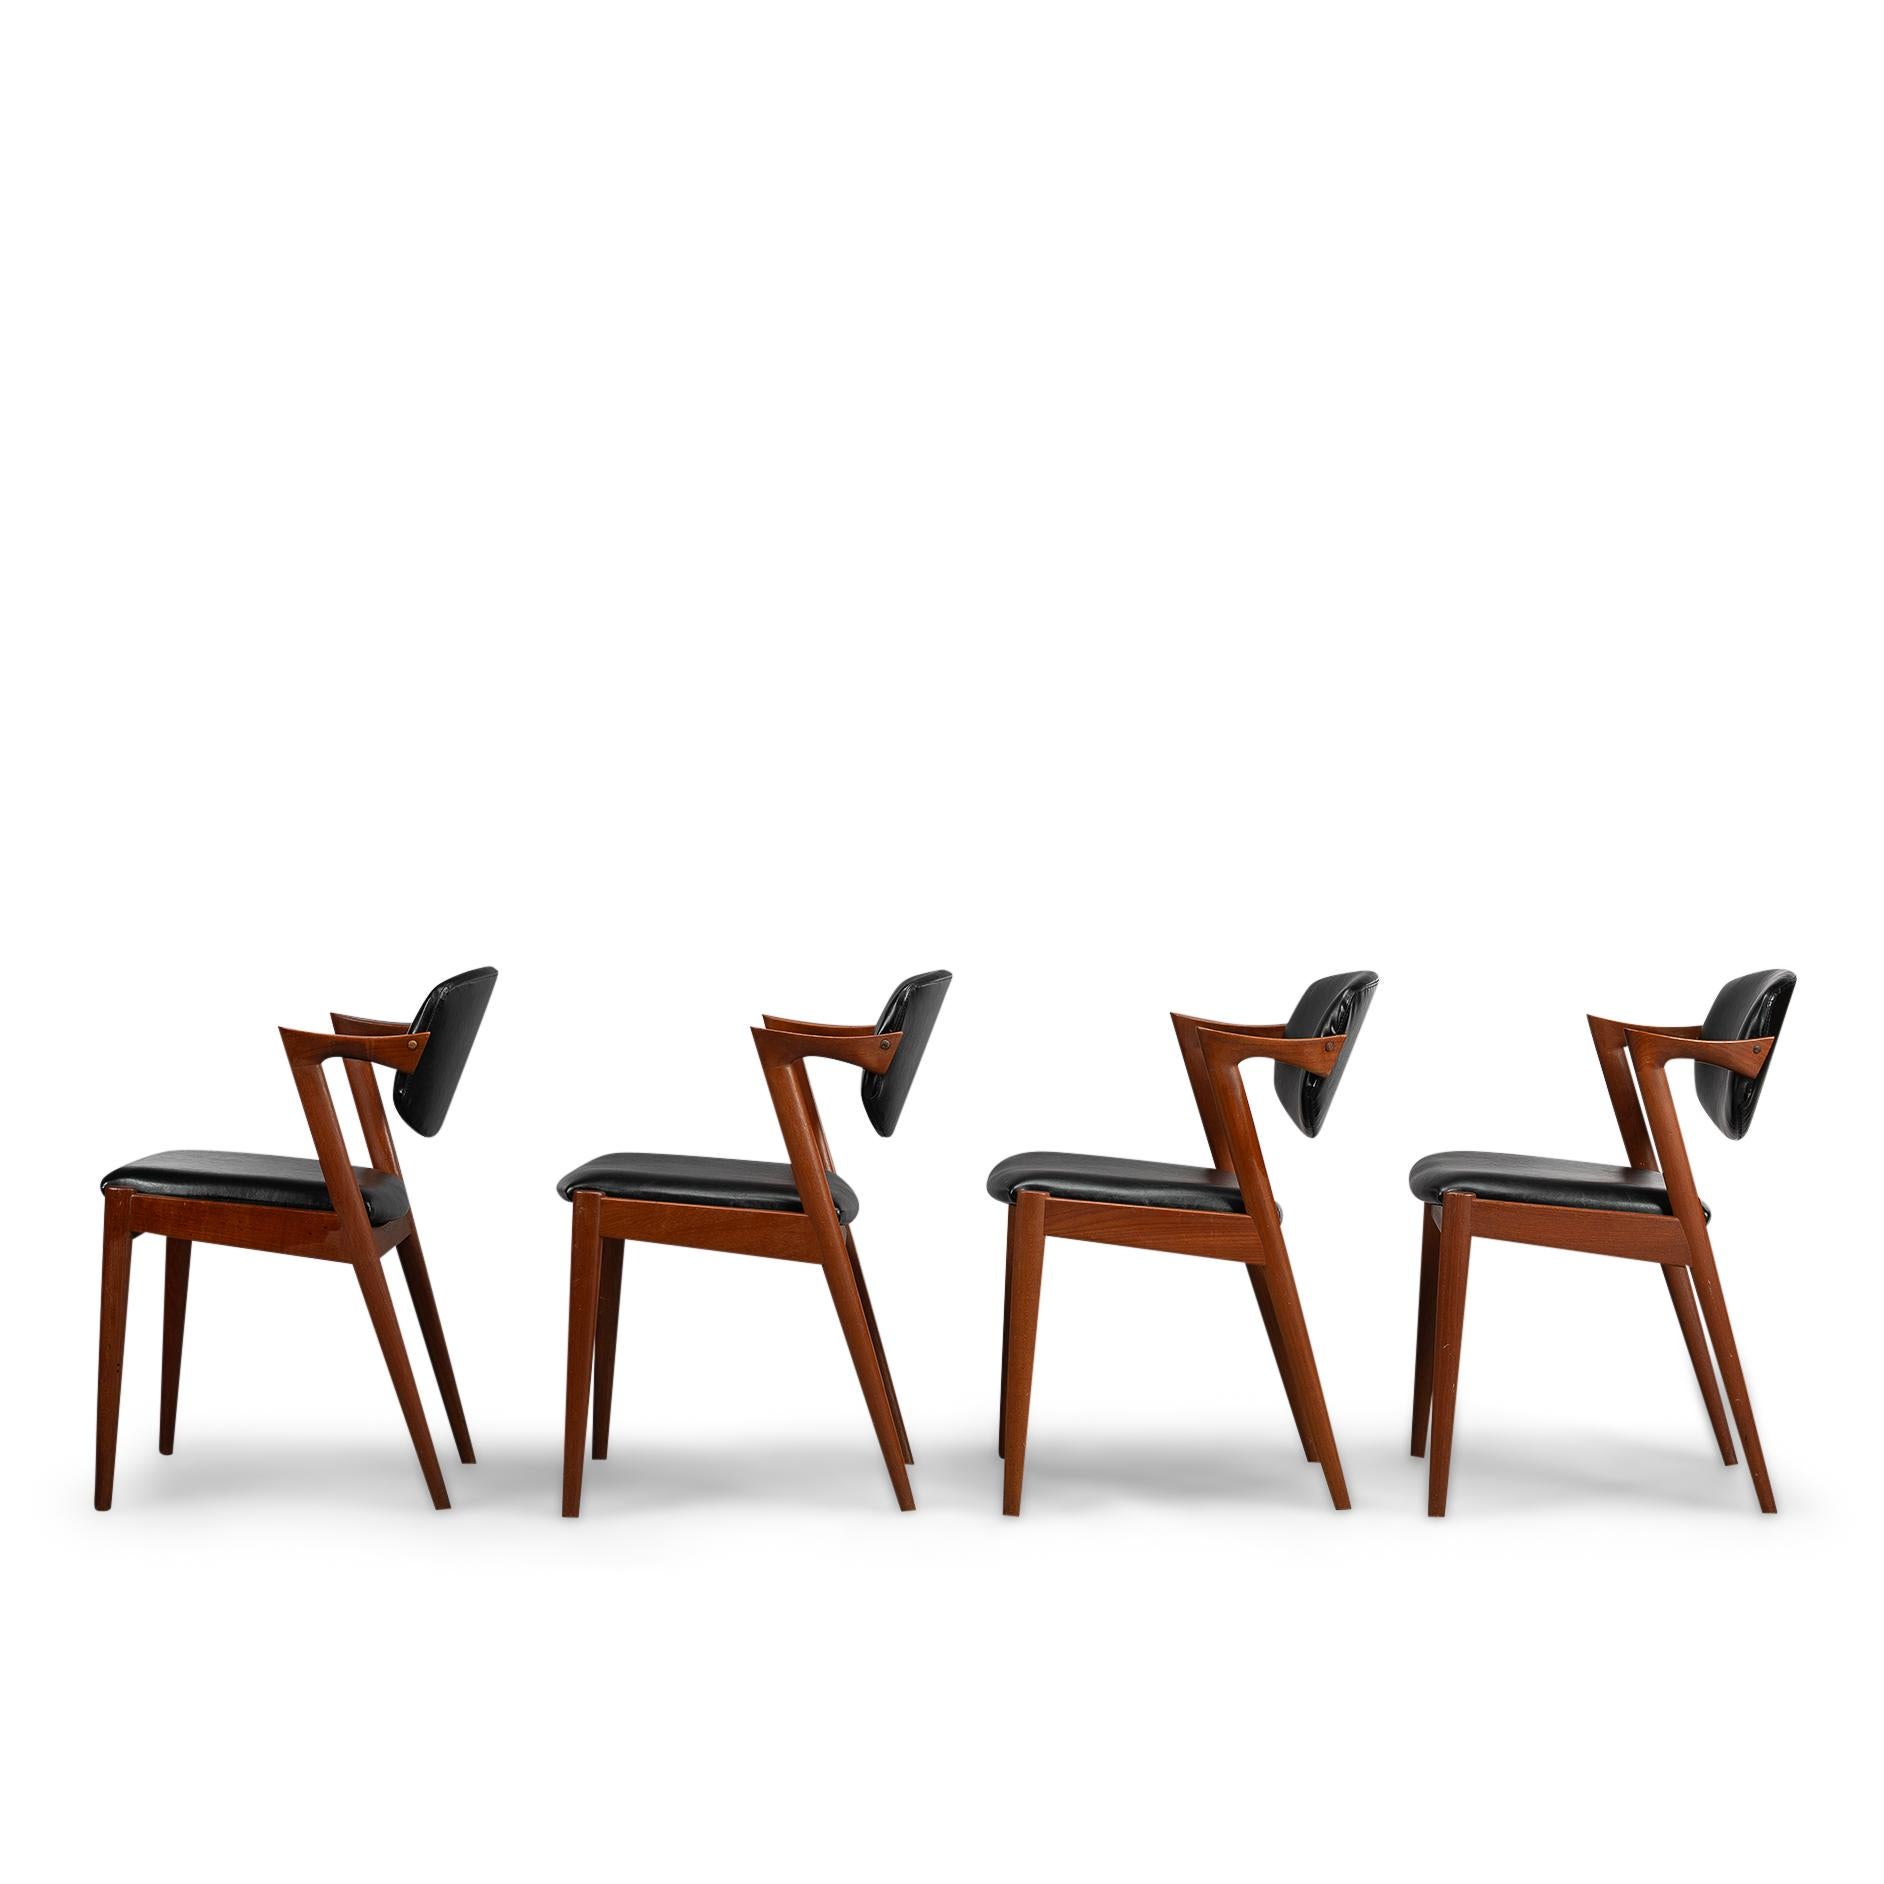 Mid-20th Century Danish Mid-Century Teak Z-Chair, Model 42, by Kai Kristiansen, 1960s, Set of 4